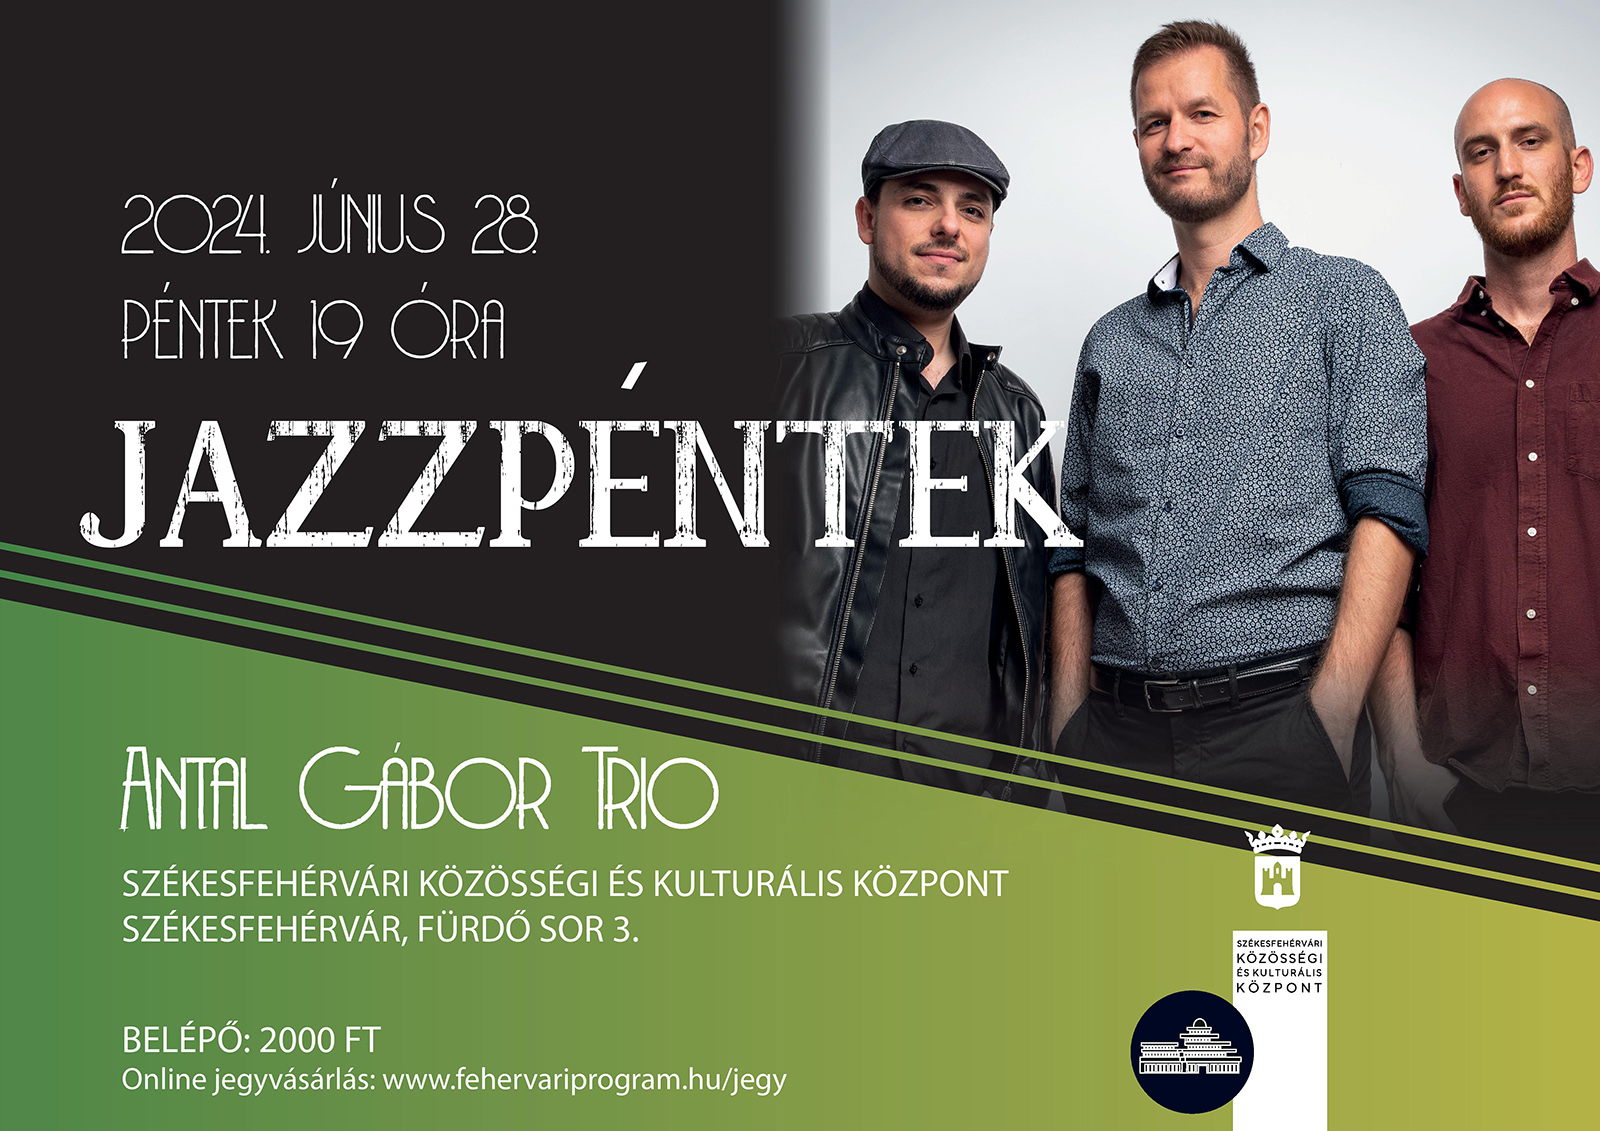 Jazzpéntek: Antal Gábor Trio @ Székesfehérvári Közösségi és Kulturális Központ